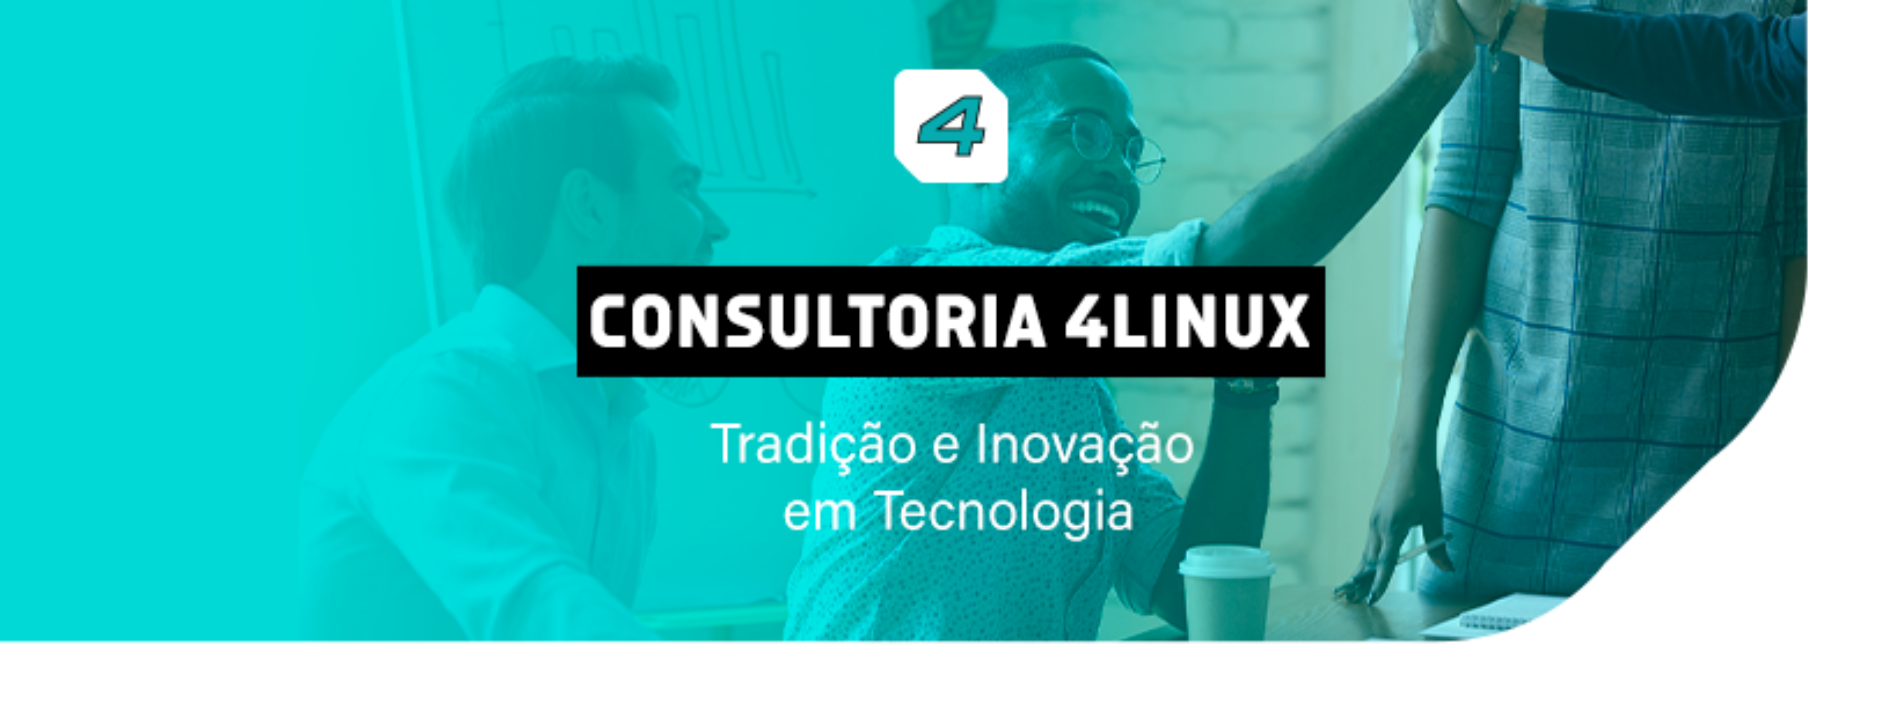 Consultoria 4Linux – Tradição e Inovação em Tecnologia